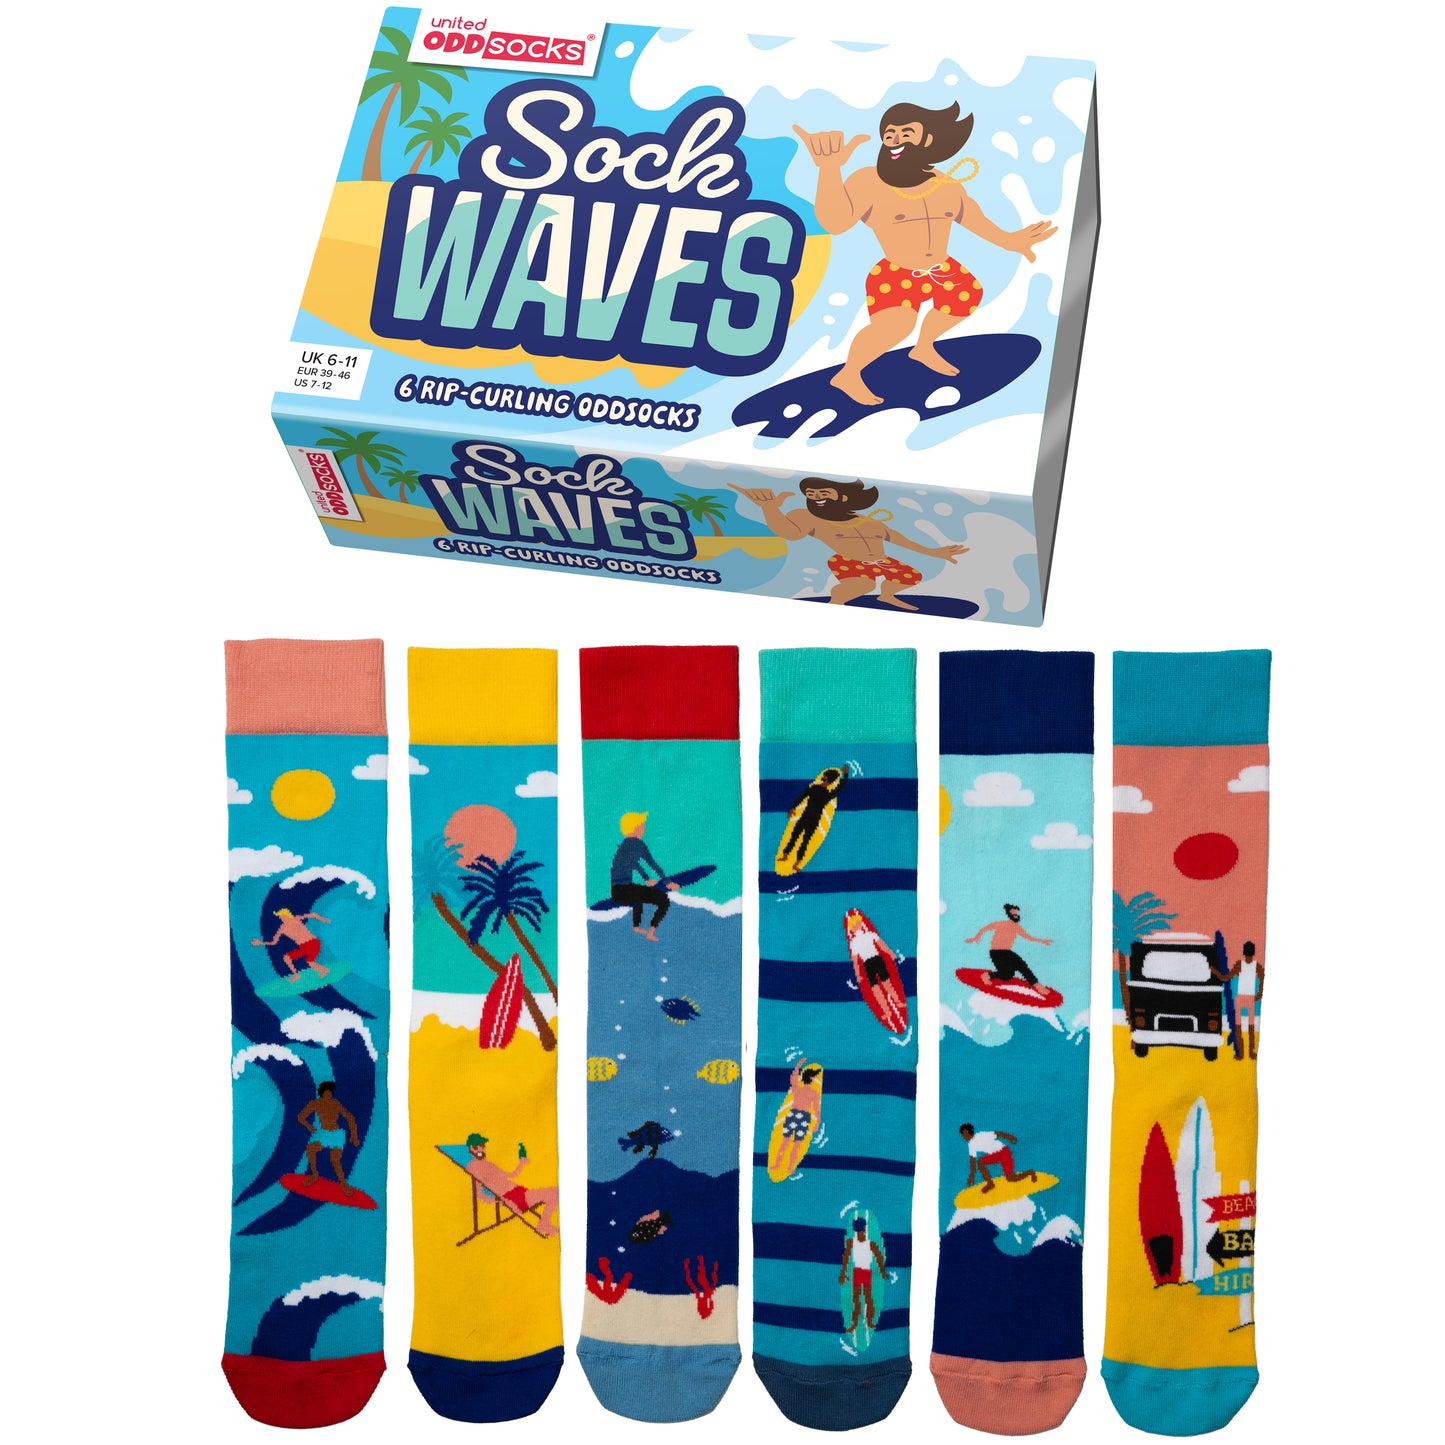 United Oddsocks Sock Waves 6 Odd Socks Gift Box